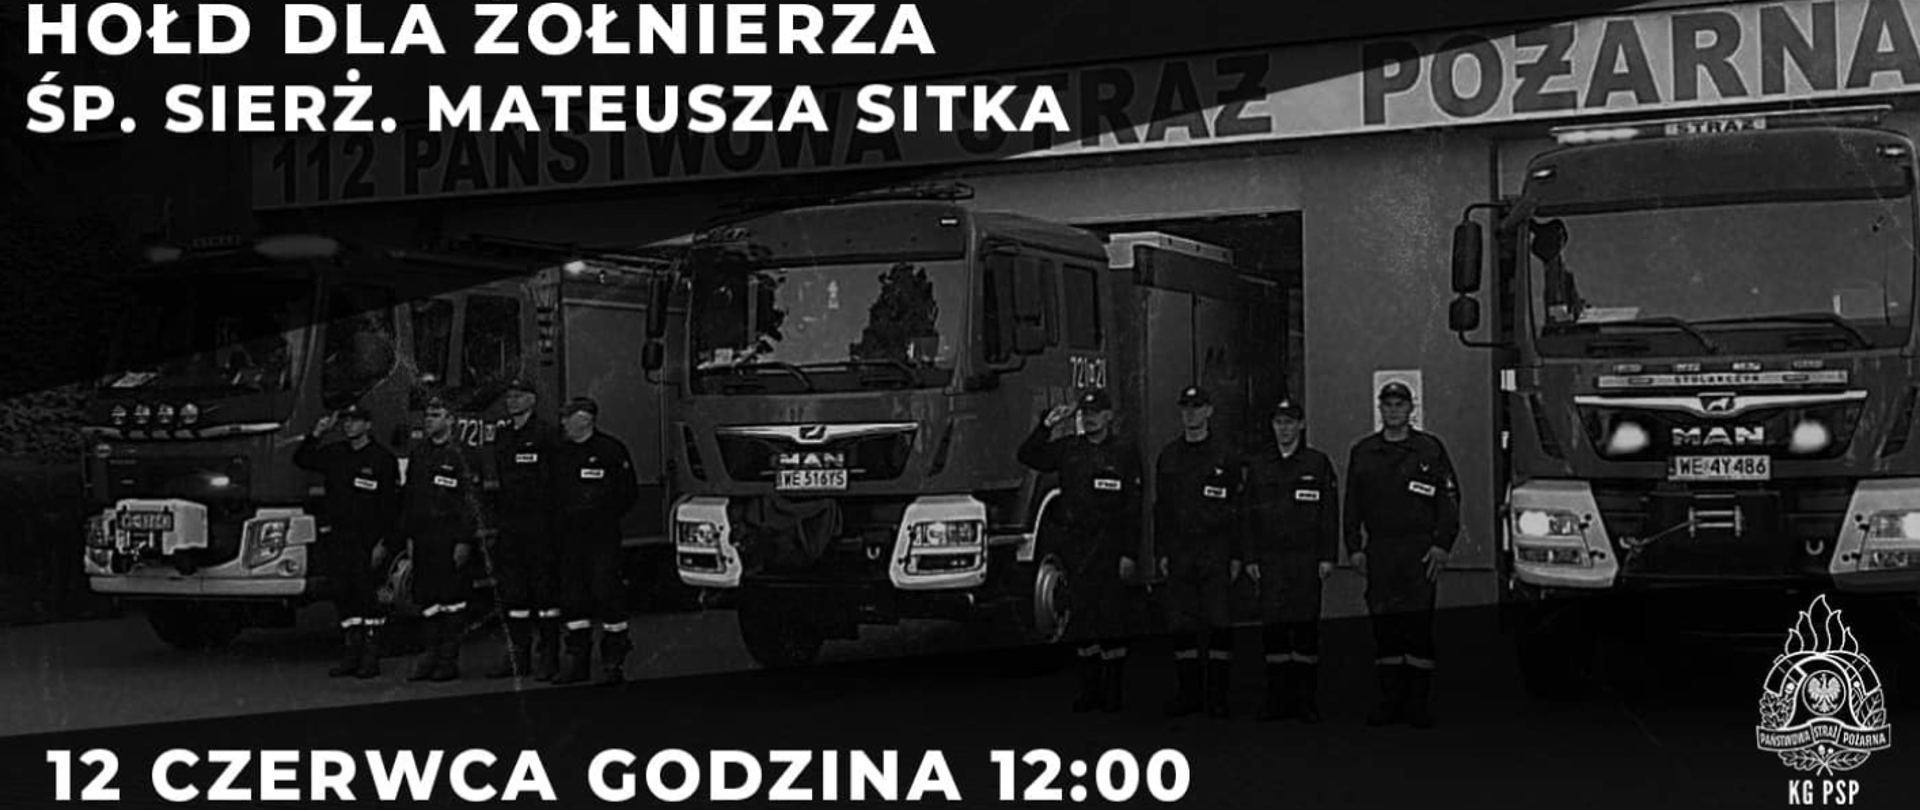 Grafika, w centrum strażacy oddający hołd przy samochodach pożarniczych. Na górze napis "Hołd dla żołnierza śp. sierż. Mateusza Sitka" na dole napis: 12 czerwca godzina 12:00.